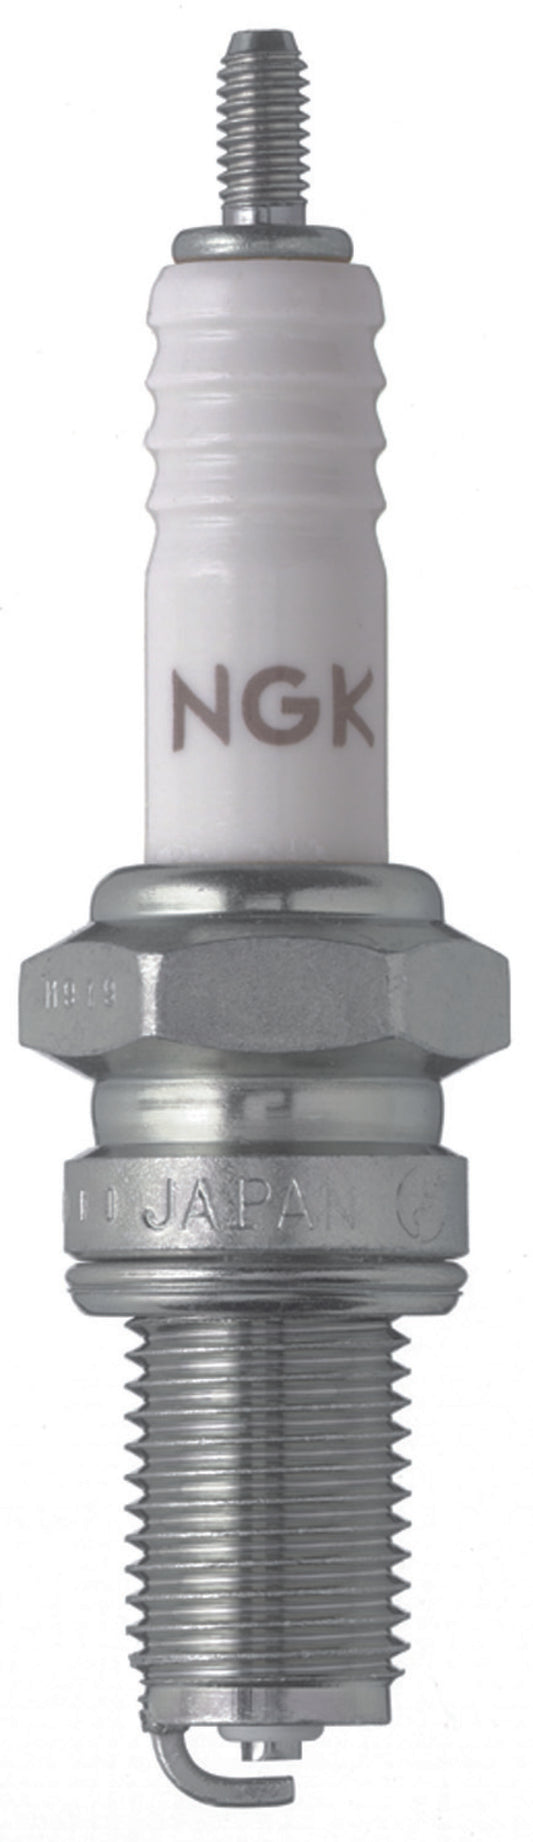 NGK Standard Spark Plug Box of 10 (D6EA)